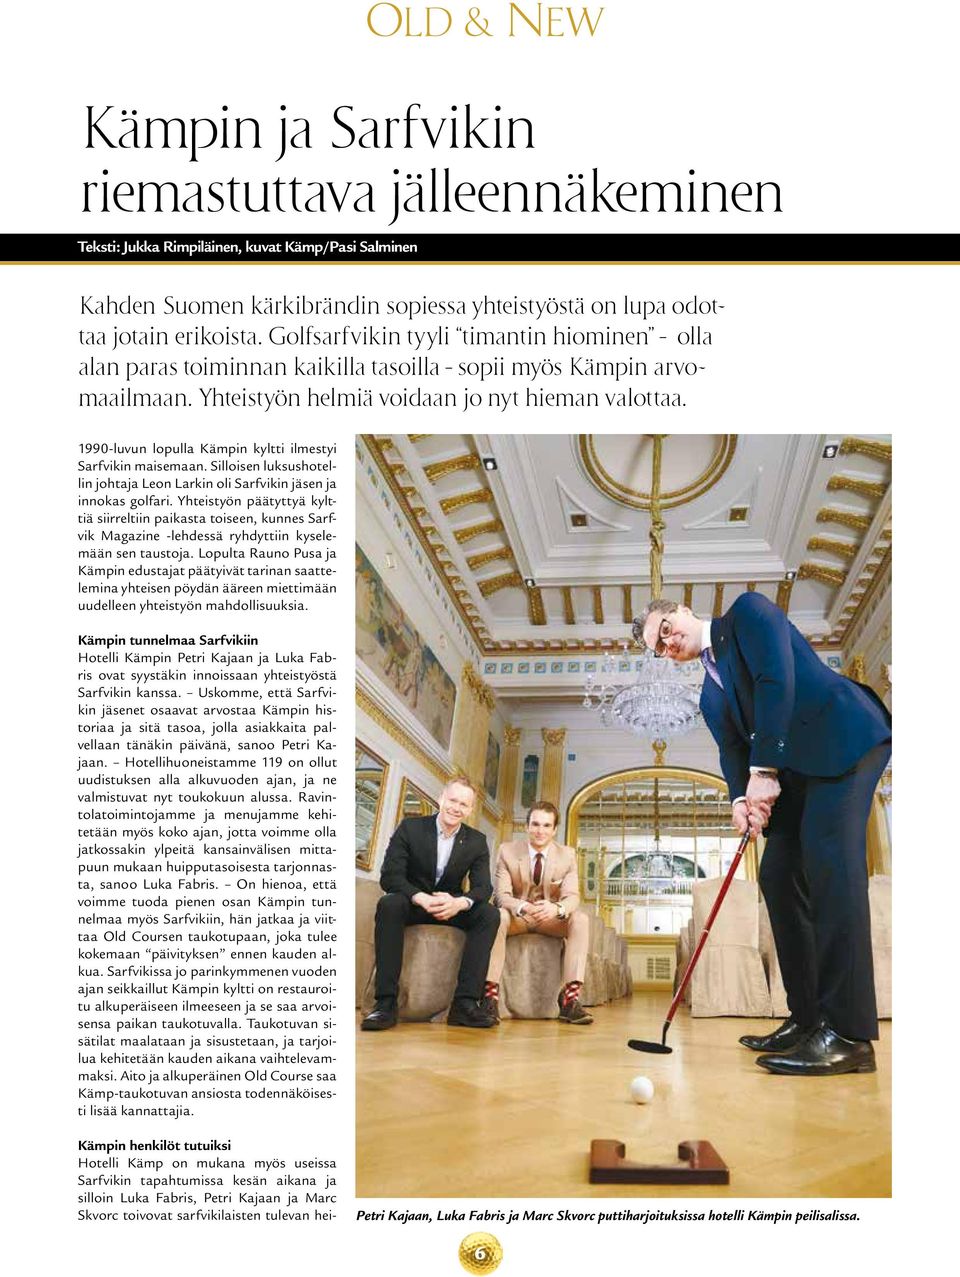 1990-luvun lopulla Kämpin kyltti ilmestyi Sarfvikin maisemaan. Silloisen luksushotellin johtaja Leon Larkin oli Sarfvikin jäsen ja innokas golfari.